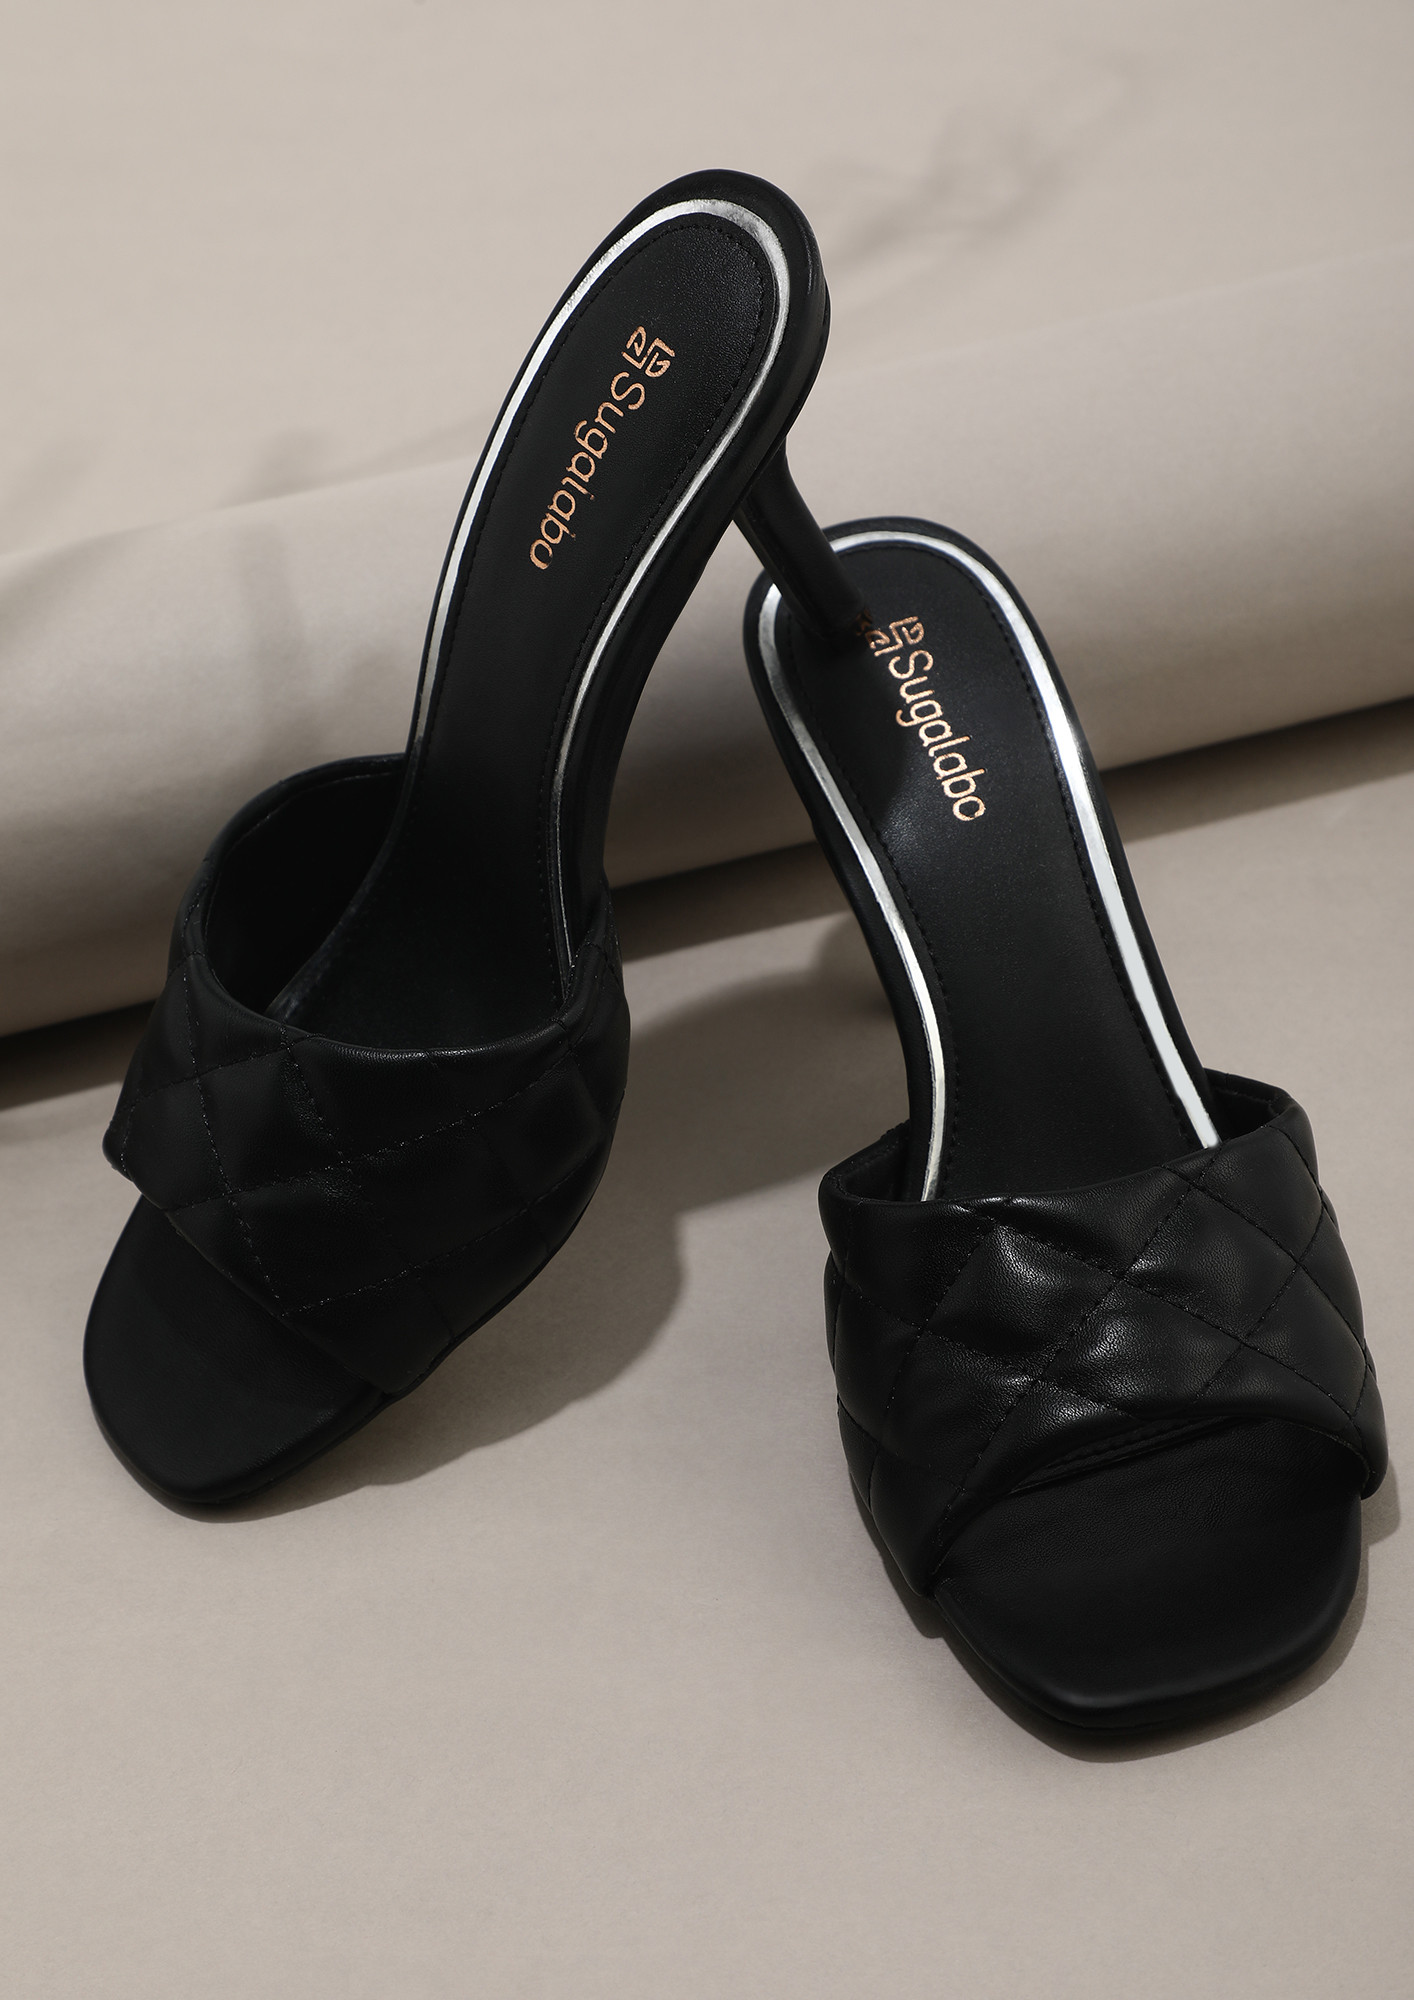 Buy Aasheez Black Heels Online at Best Prices in India - JioMart.